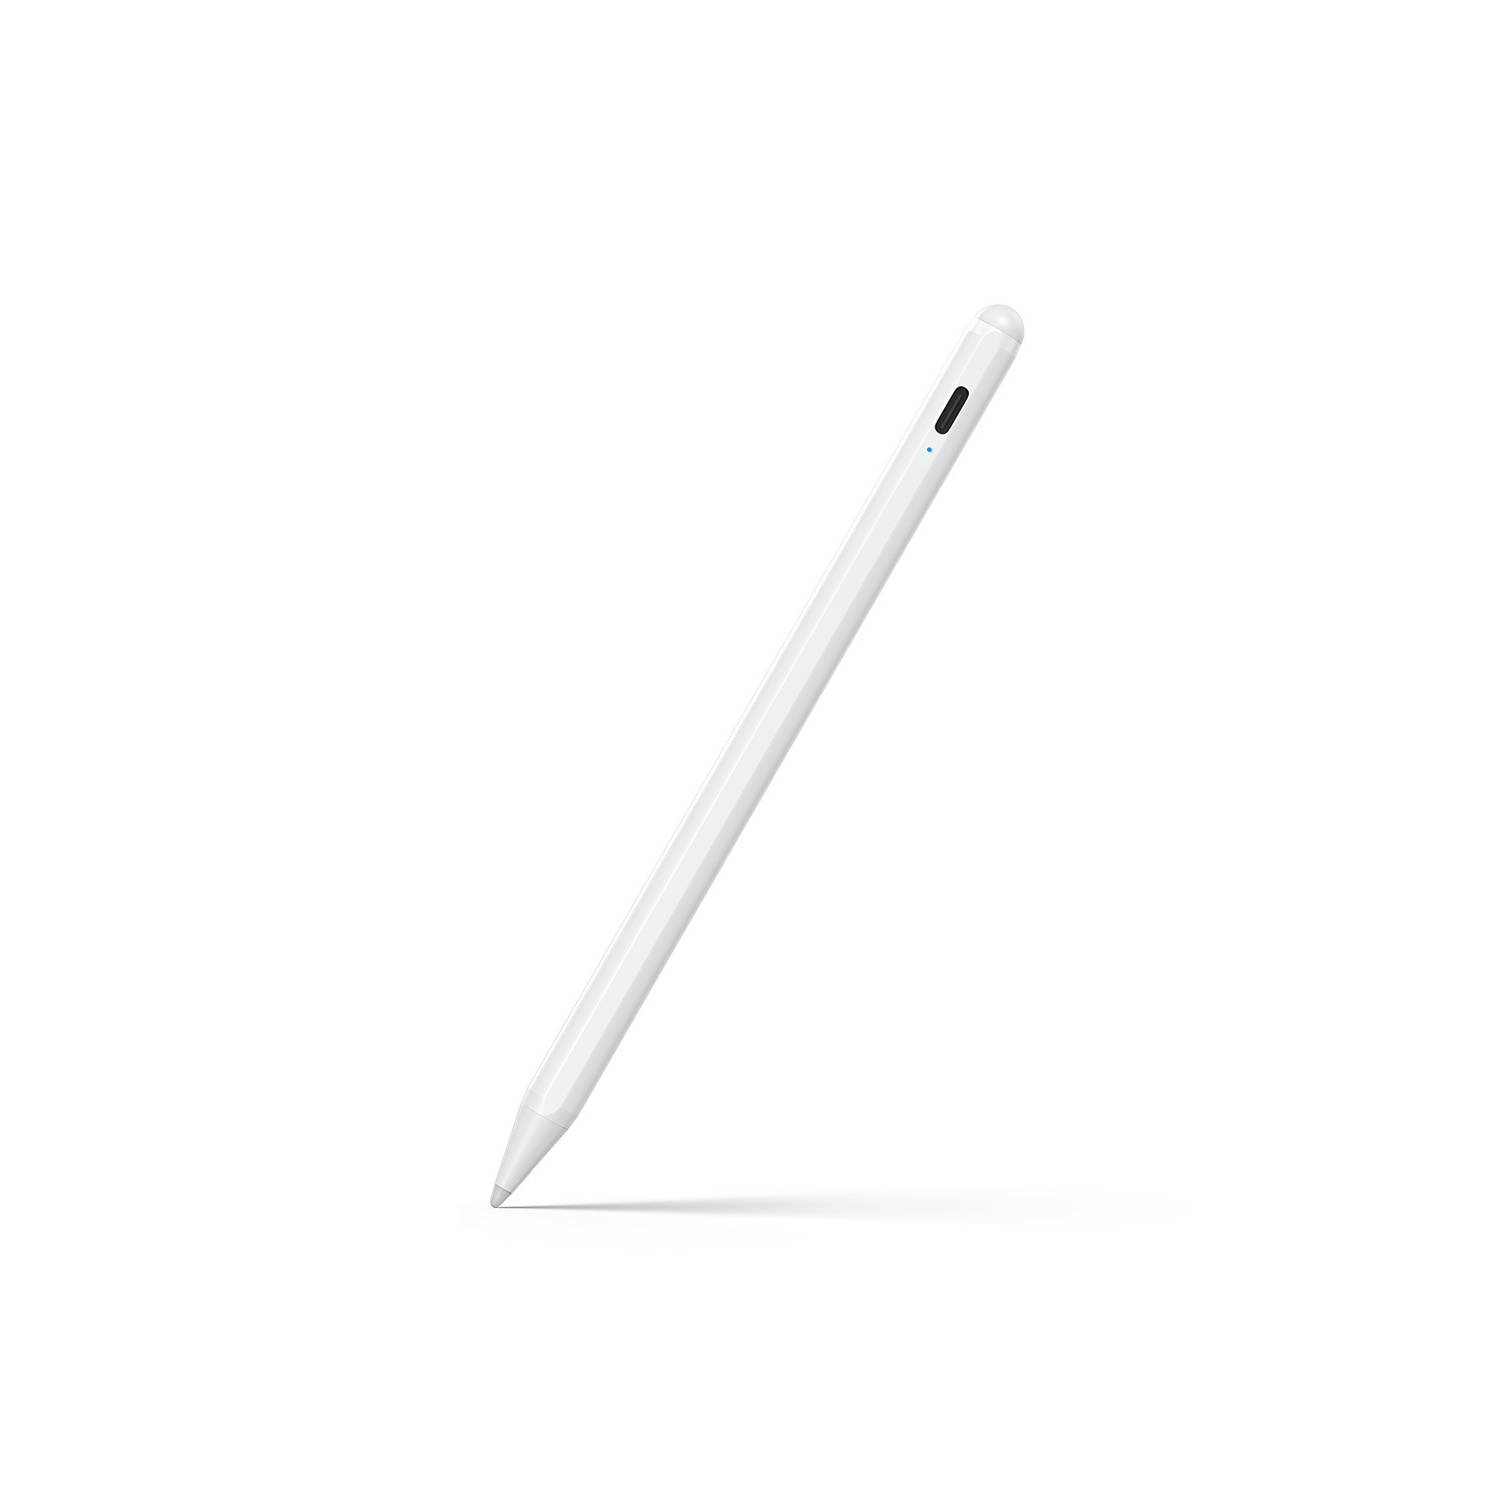 Tablet Samsung con lápiz incluido - Expertos en Lápices Digitales